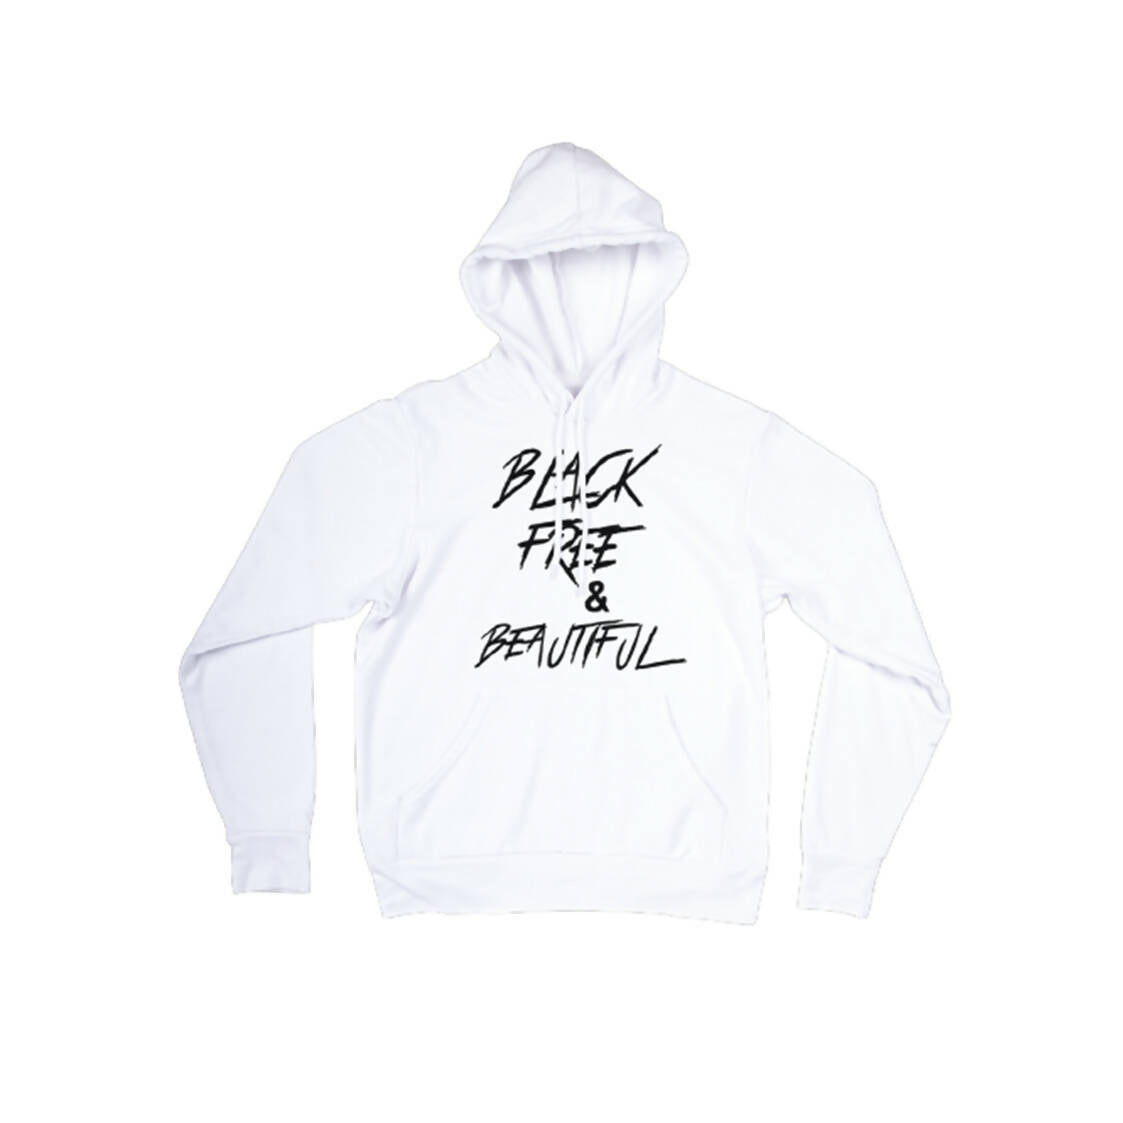 black, free & beautiful hoodie